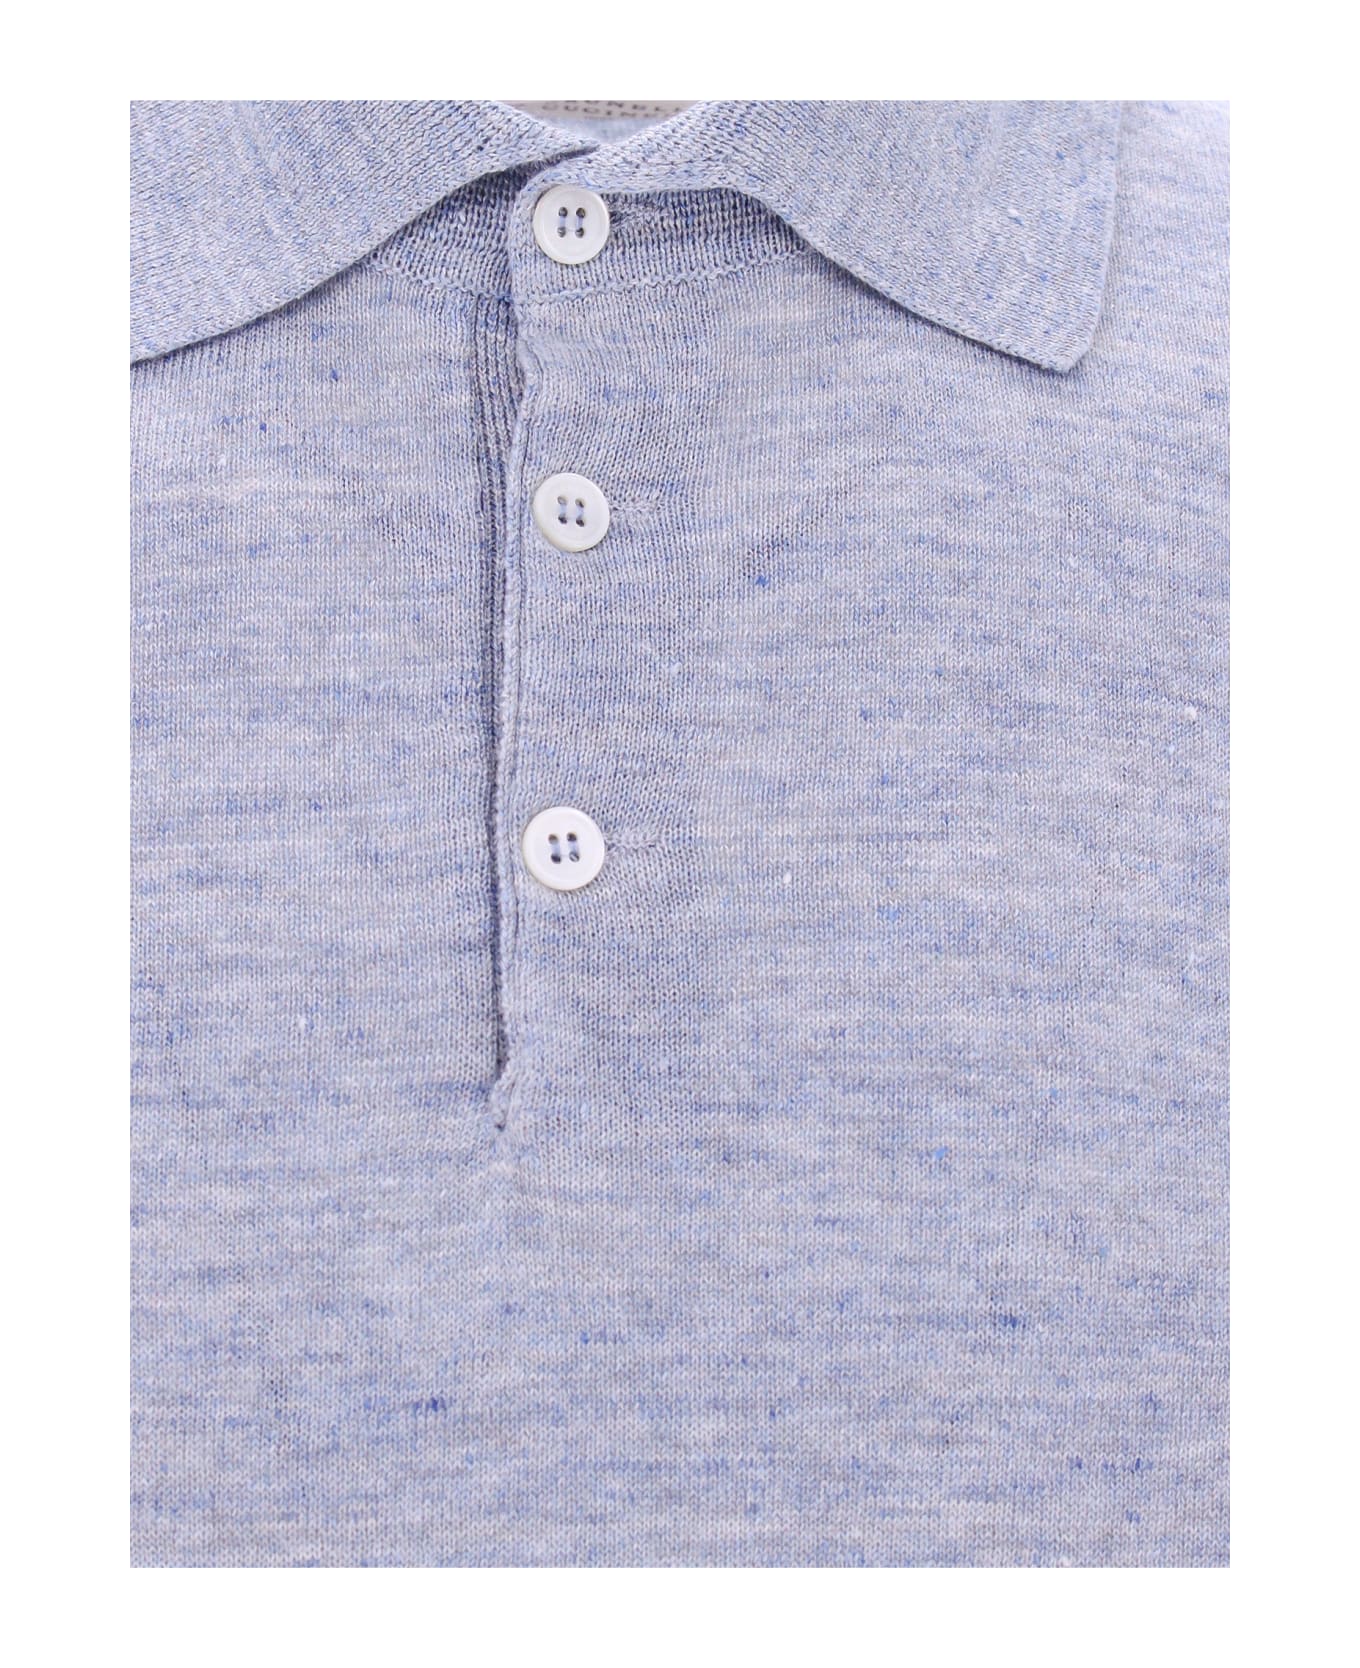 Brunello Cucinelli Polo Shirt - Blue ポロシャツ